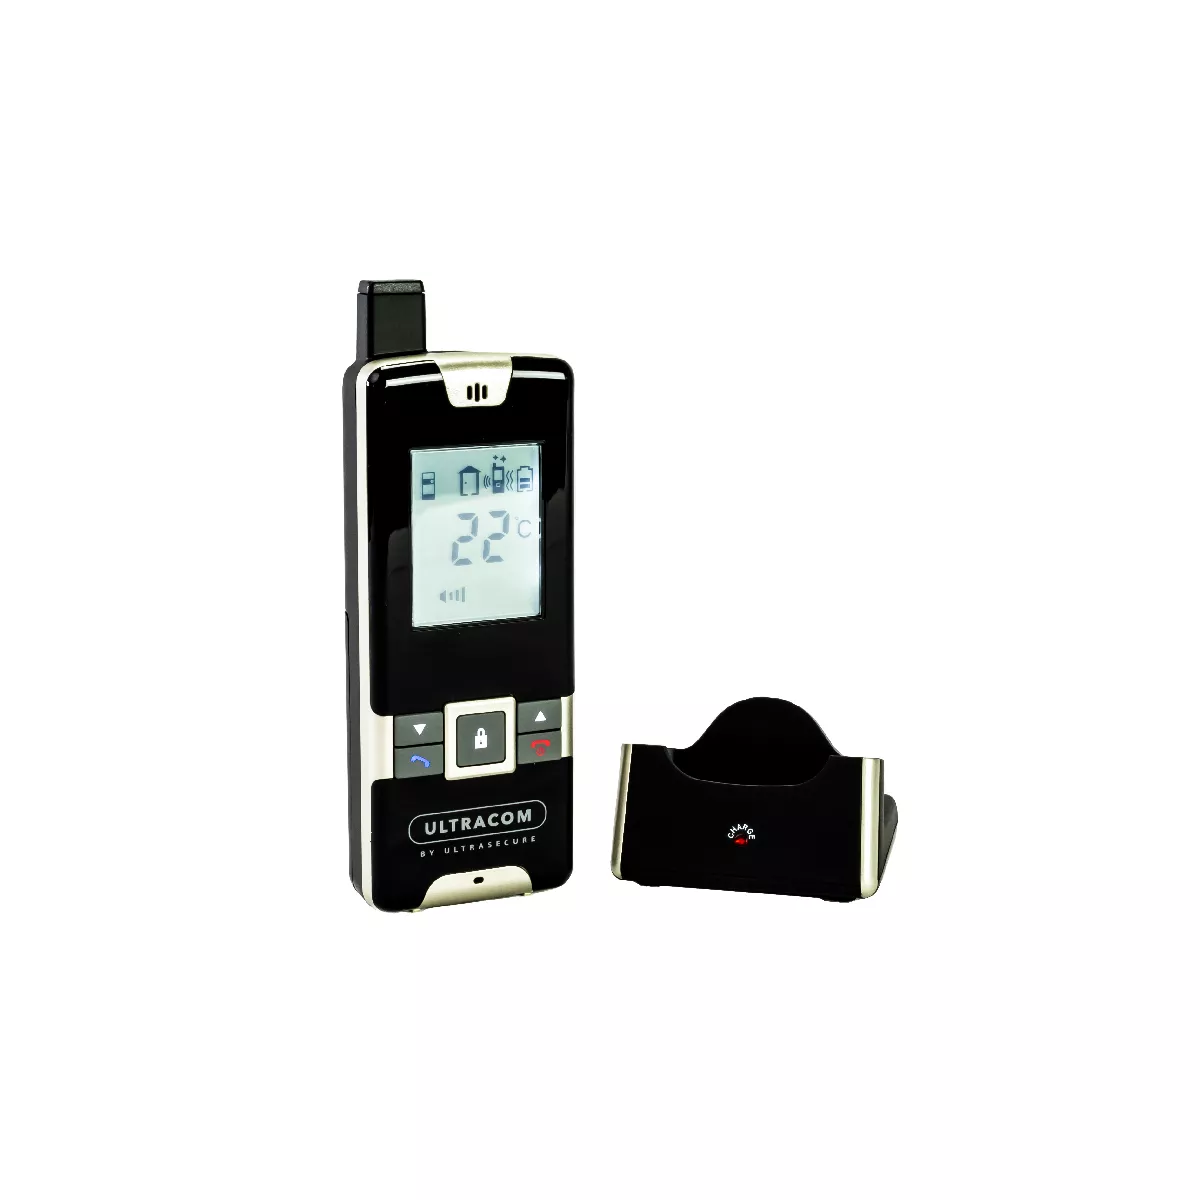 Interphone hôpital / santé / protection - 100% sans-fil autonome piles 600m  - UltraCOM2 Noir 600-SOLO + combiné mobile